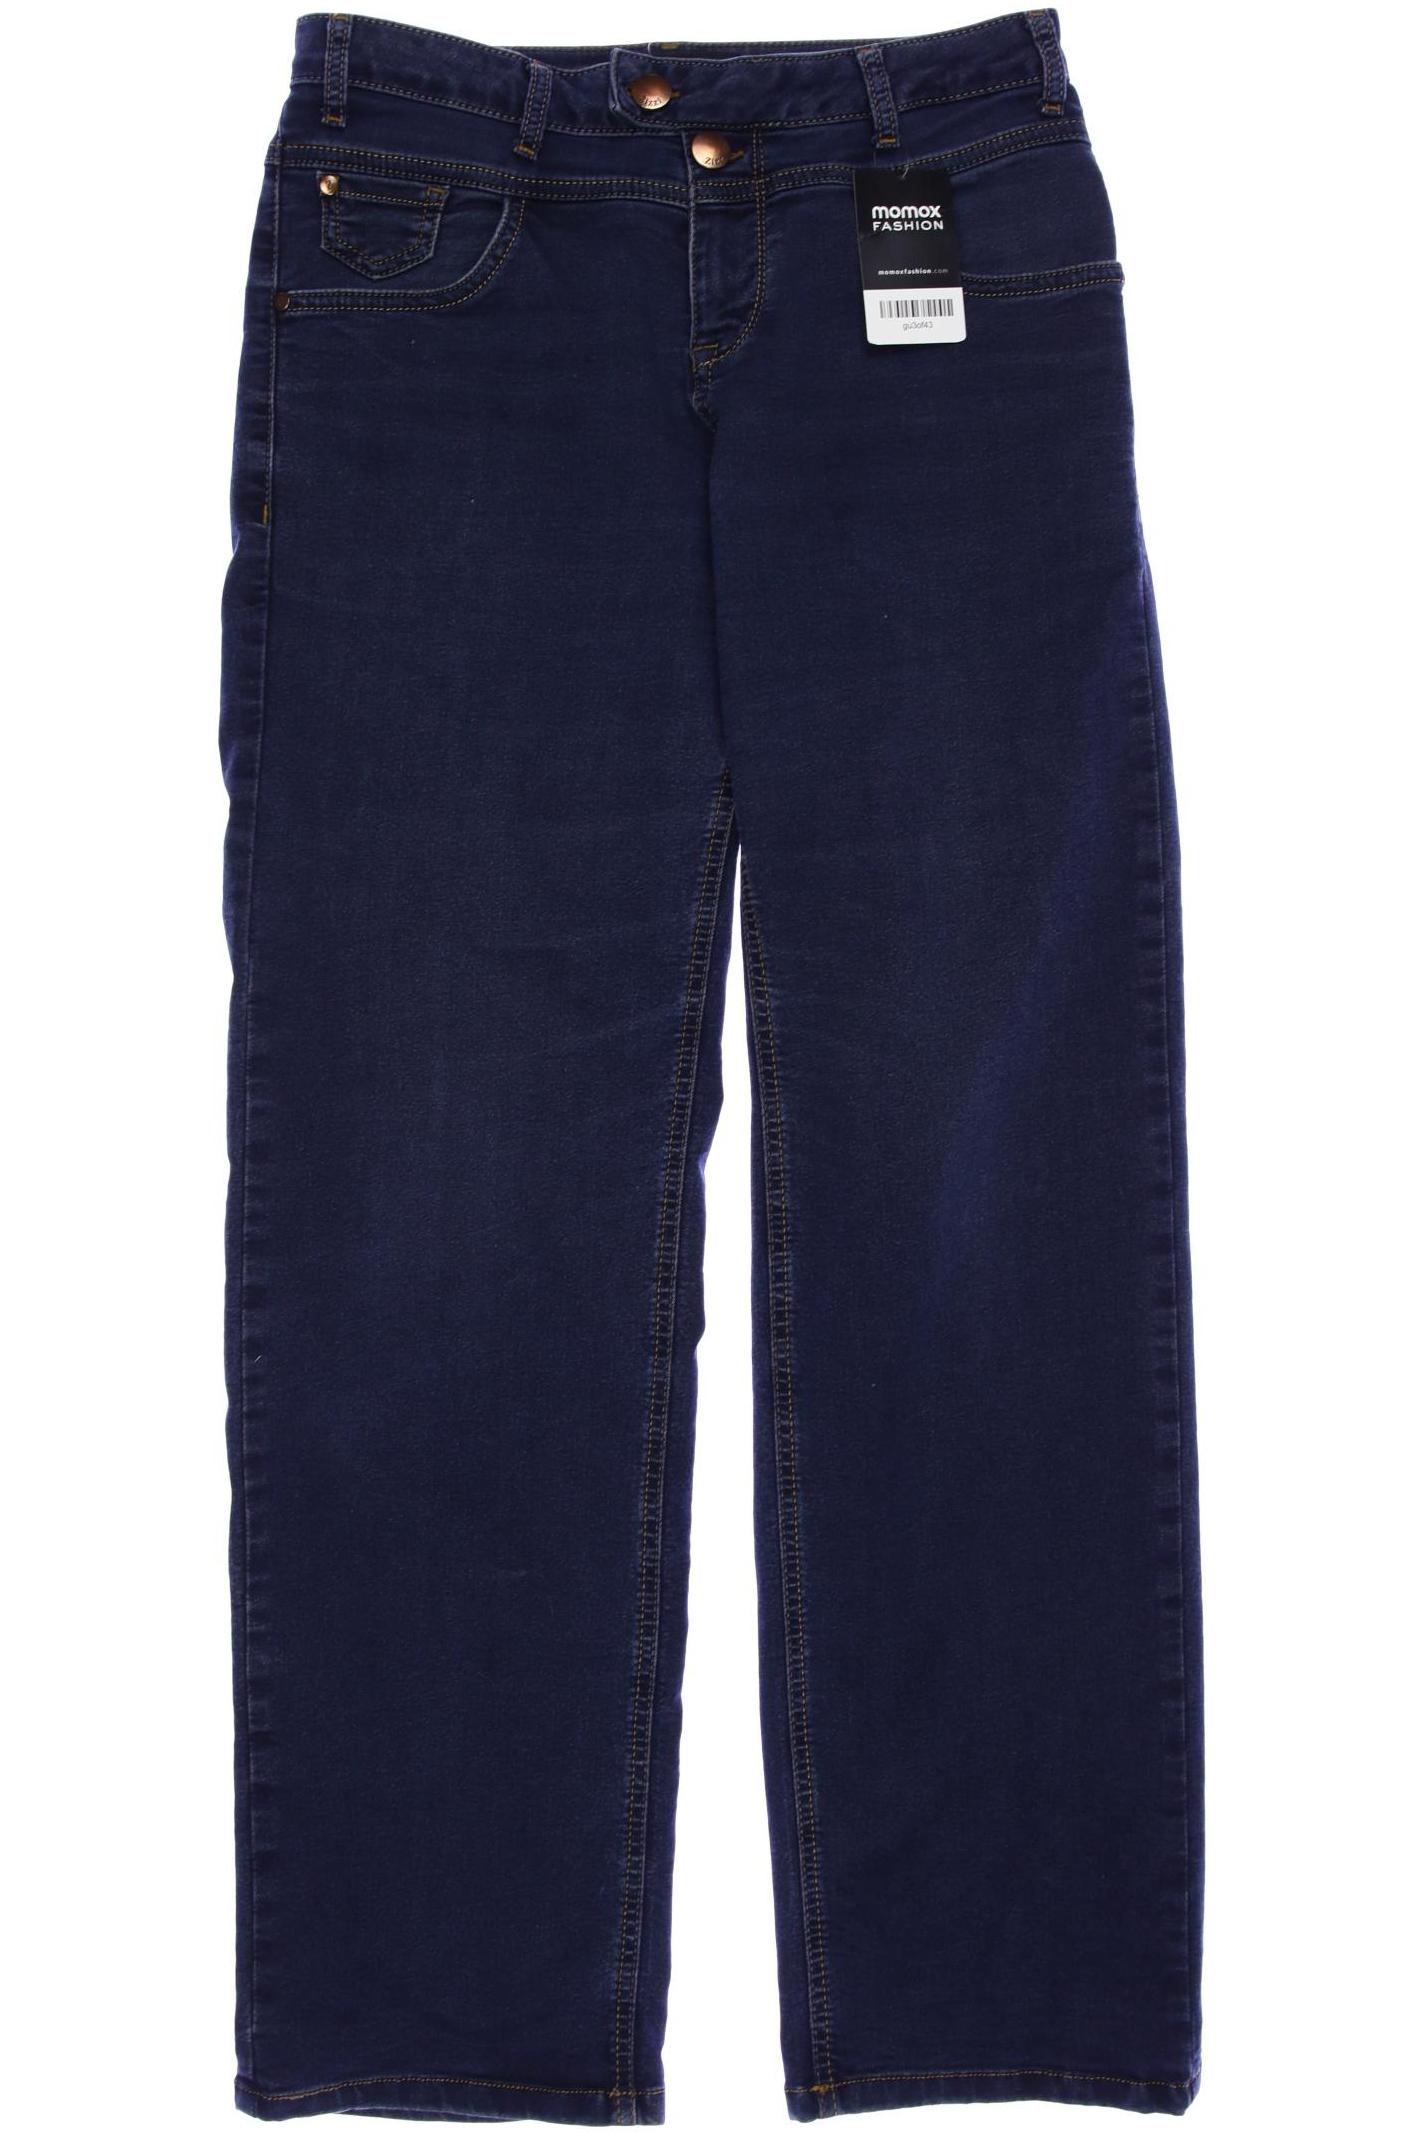 Zizzi Damen Jeans, marineblau von Zizzi